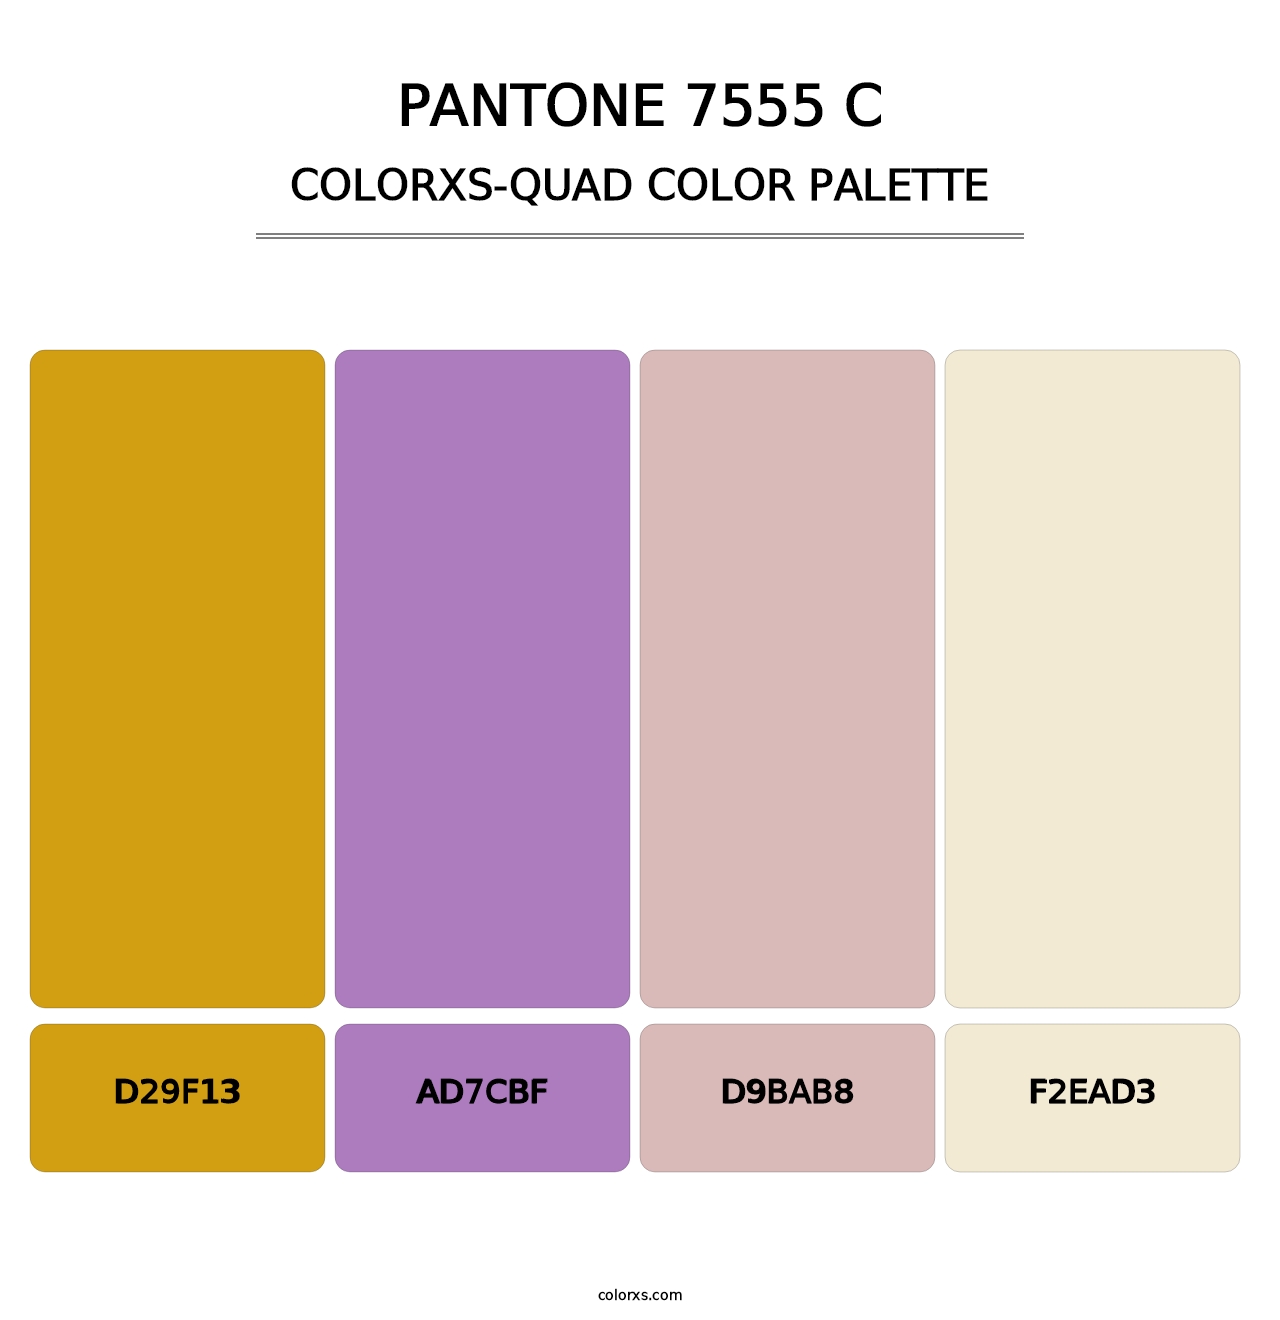 PANTONE 7555 C - Colorxs Quad Palette